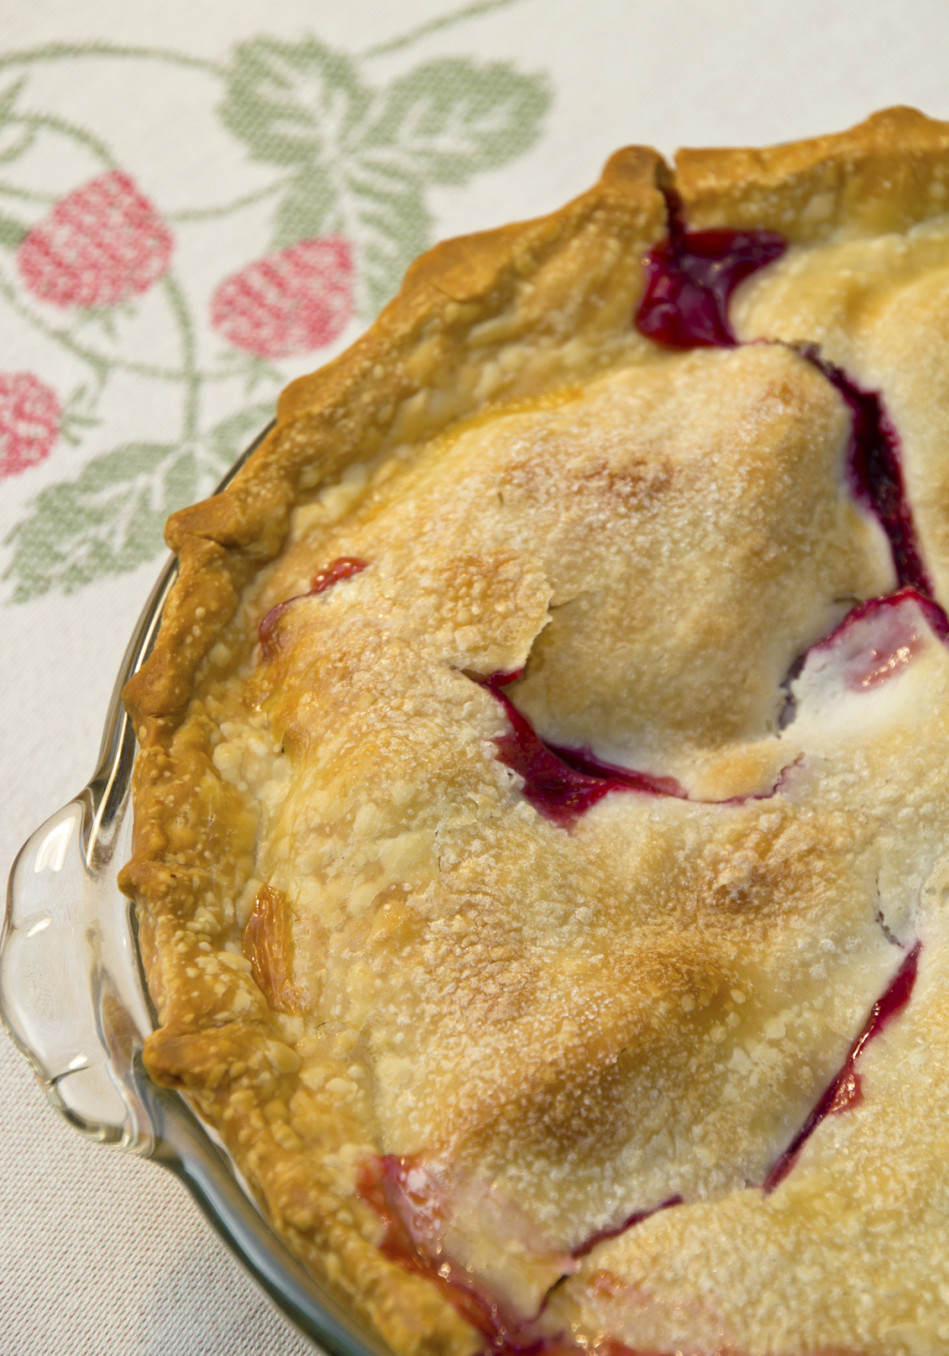 Cindy Crawford's Strawberry-Rhubarb Pie